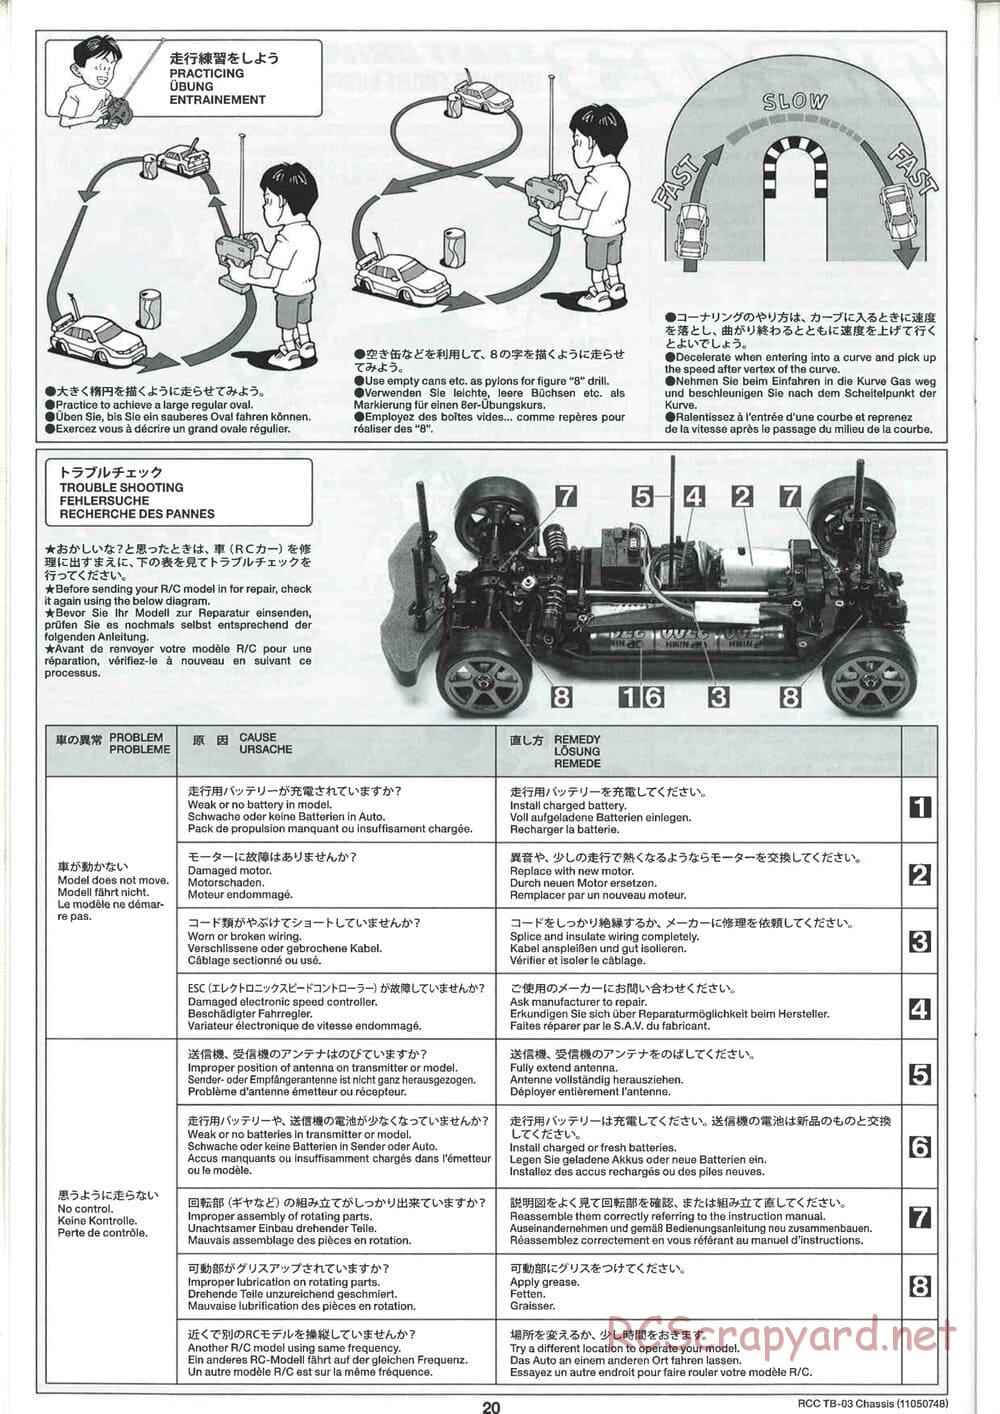 Tamiya - TB-03 Chassis - Manual - Page 20